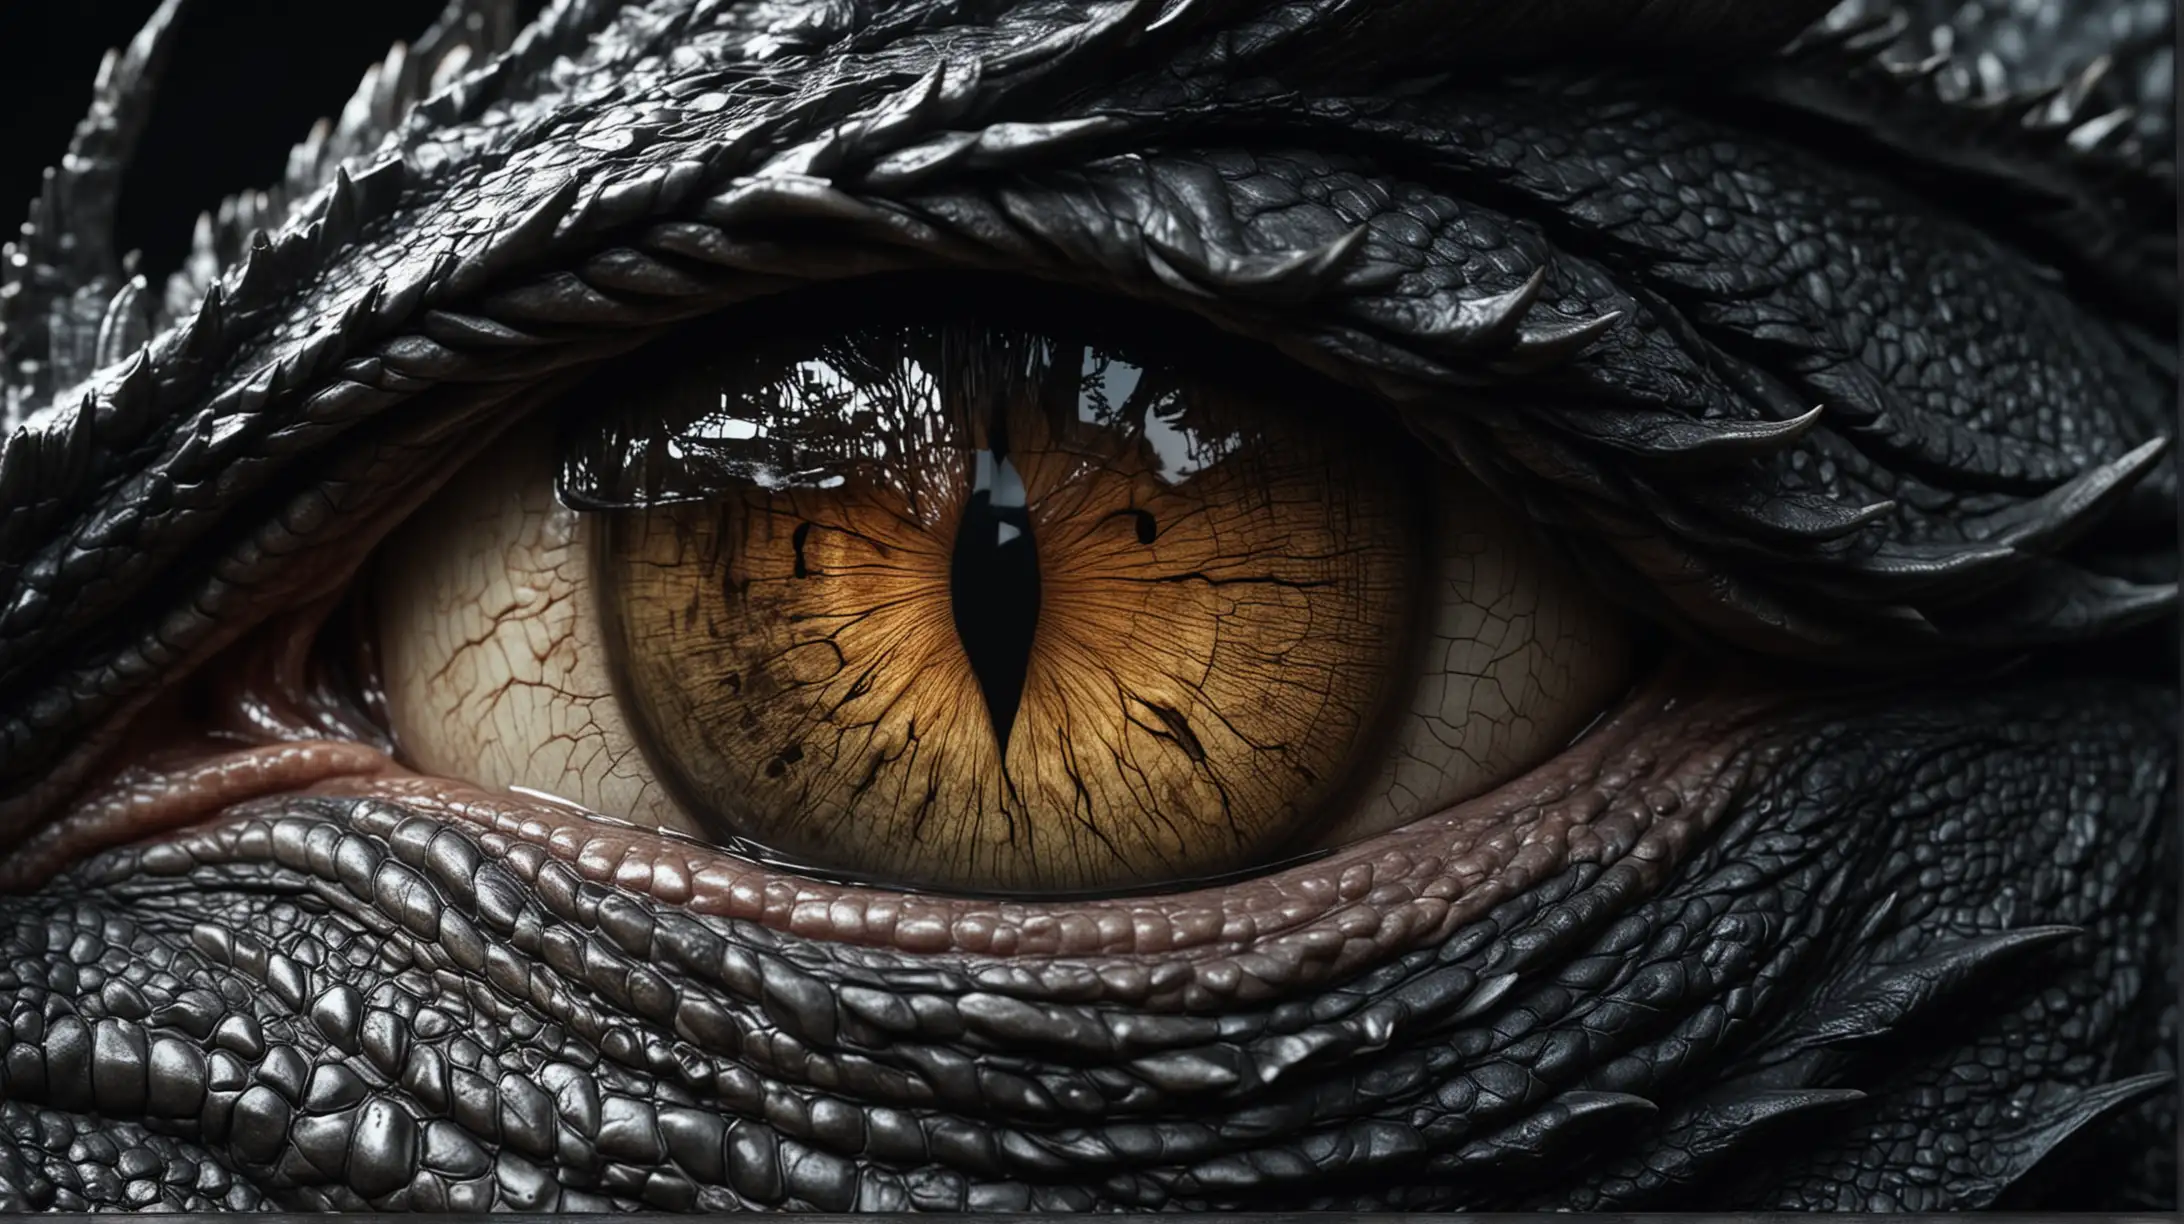 l'oeil d'un dragon, noir, hyperréaliste de haute qualité, 8K Ultra HD